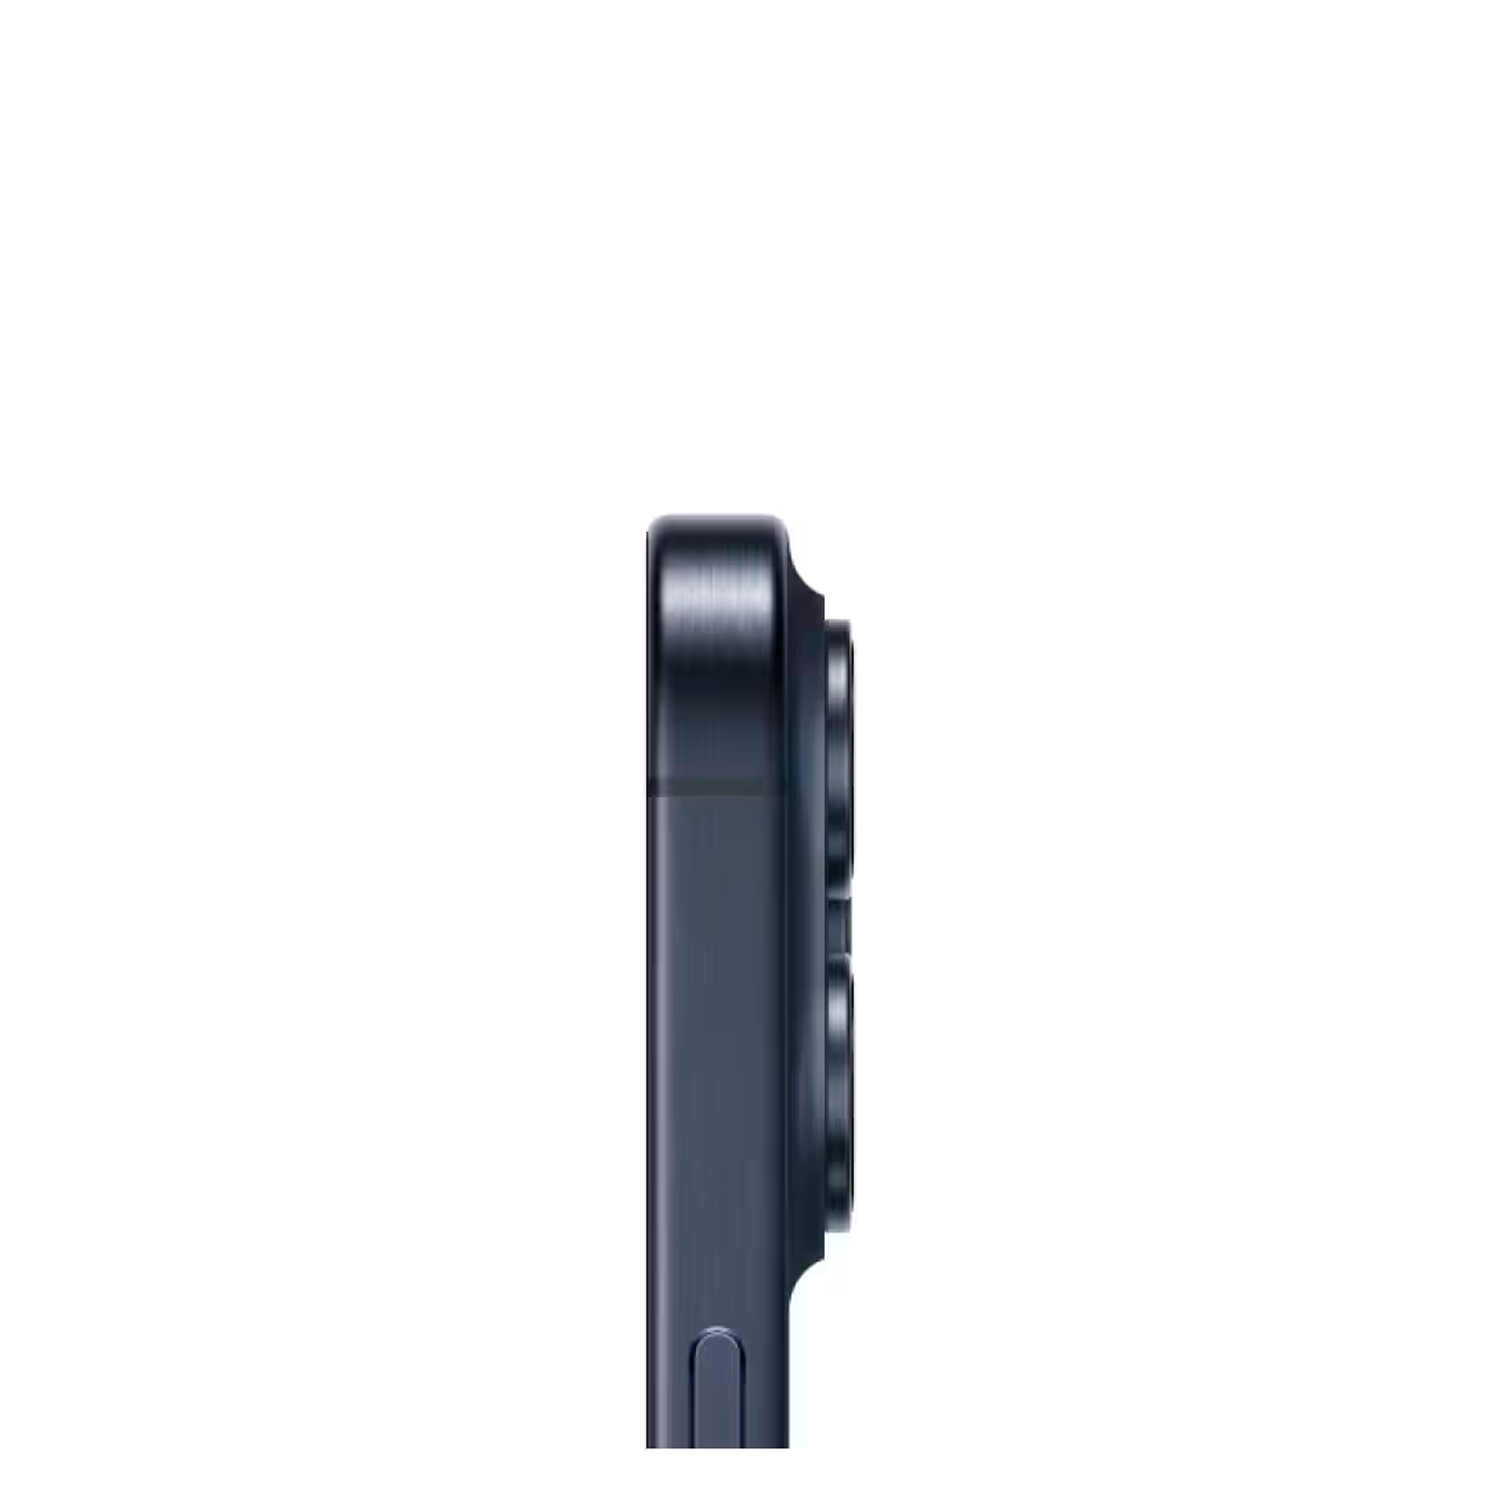 Apple iPhone 15 Pro A2848 LL/A 128GB eSIM Tela 6.1" - Titânio Azul